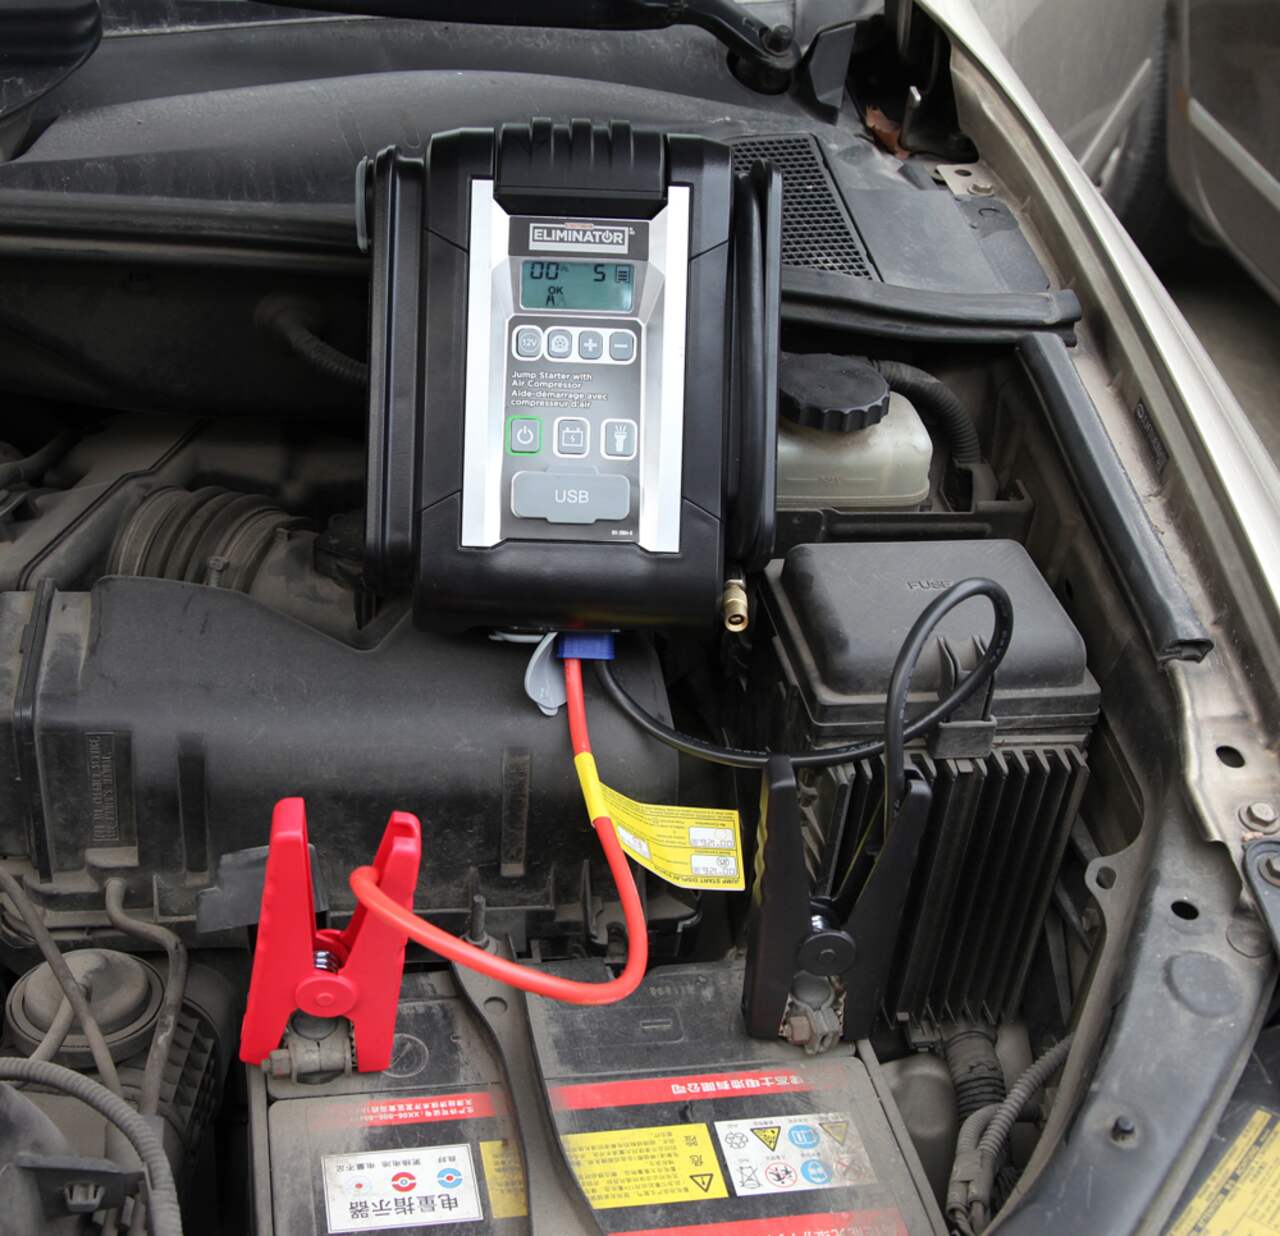 Démarreur de batterie au lithium 5-en-1 MotoMaster Eliminator, 1000 a, 12  V, avec compresseur intégré